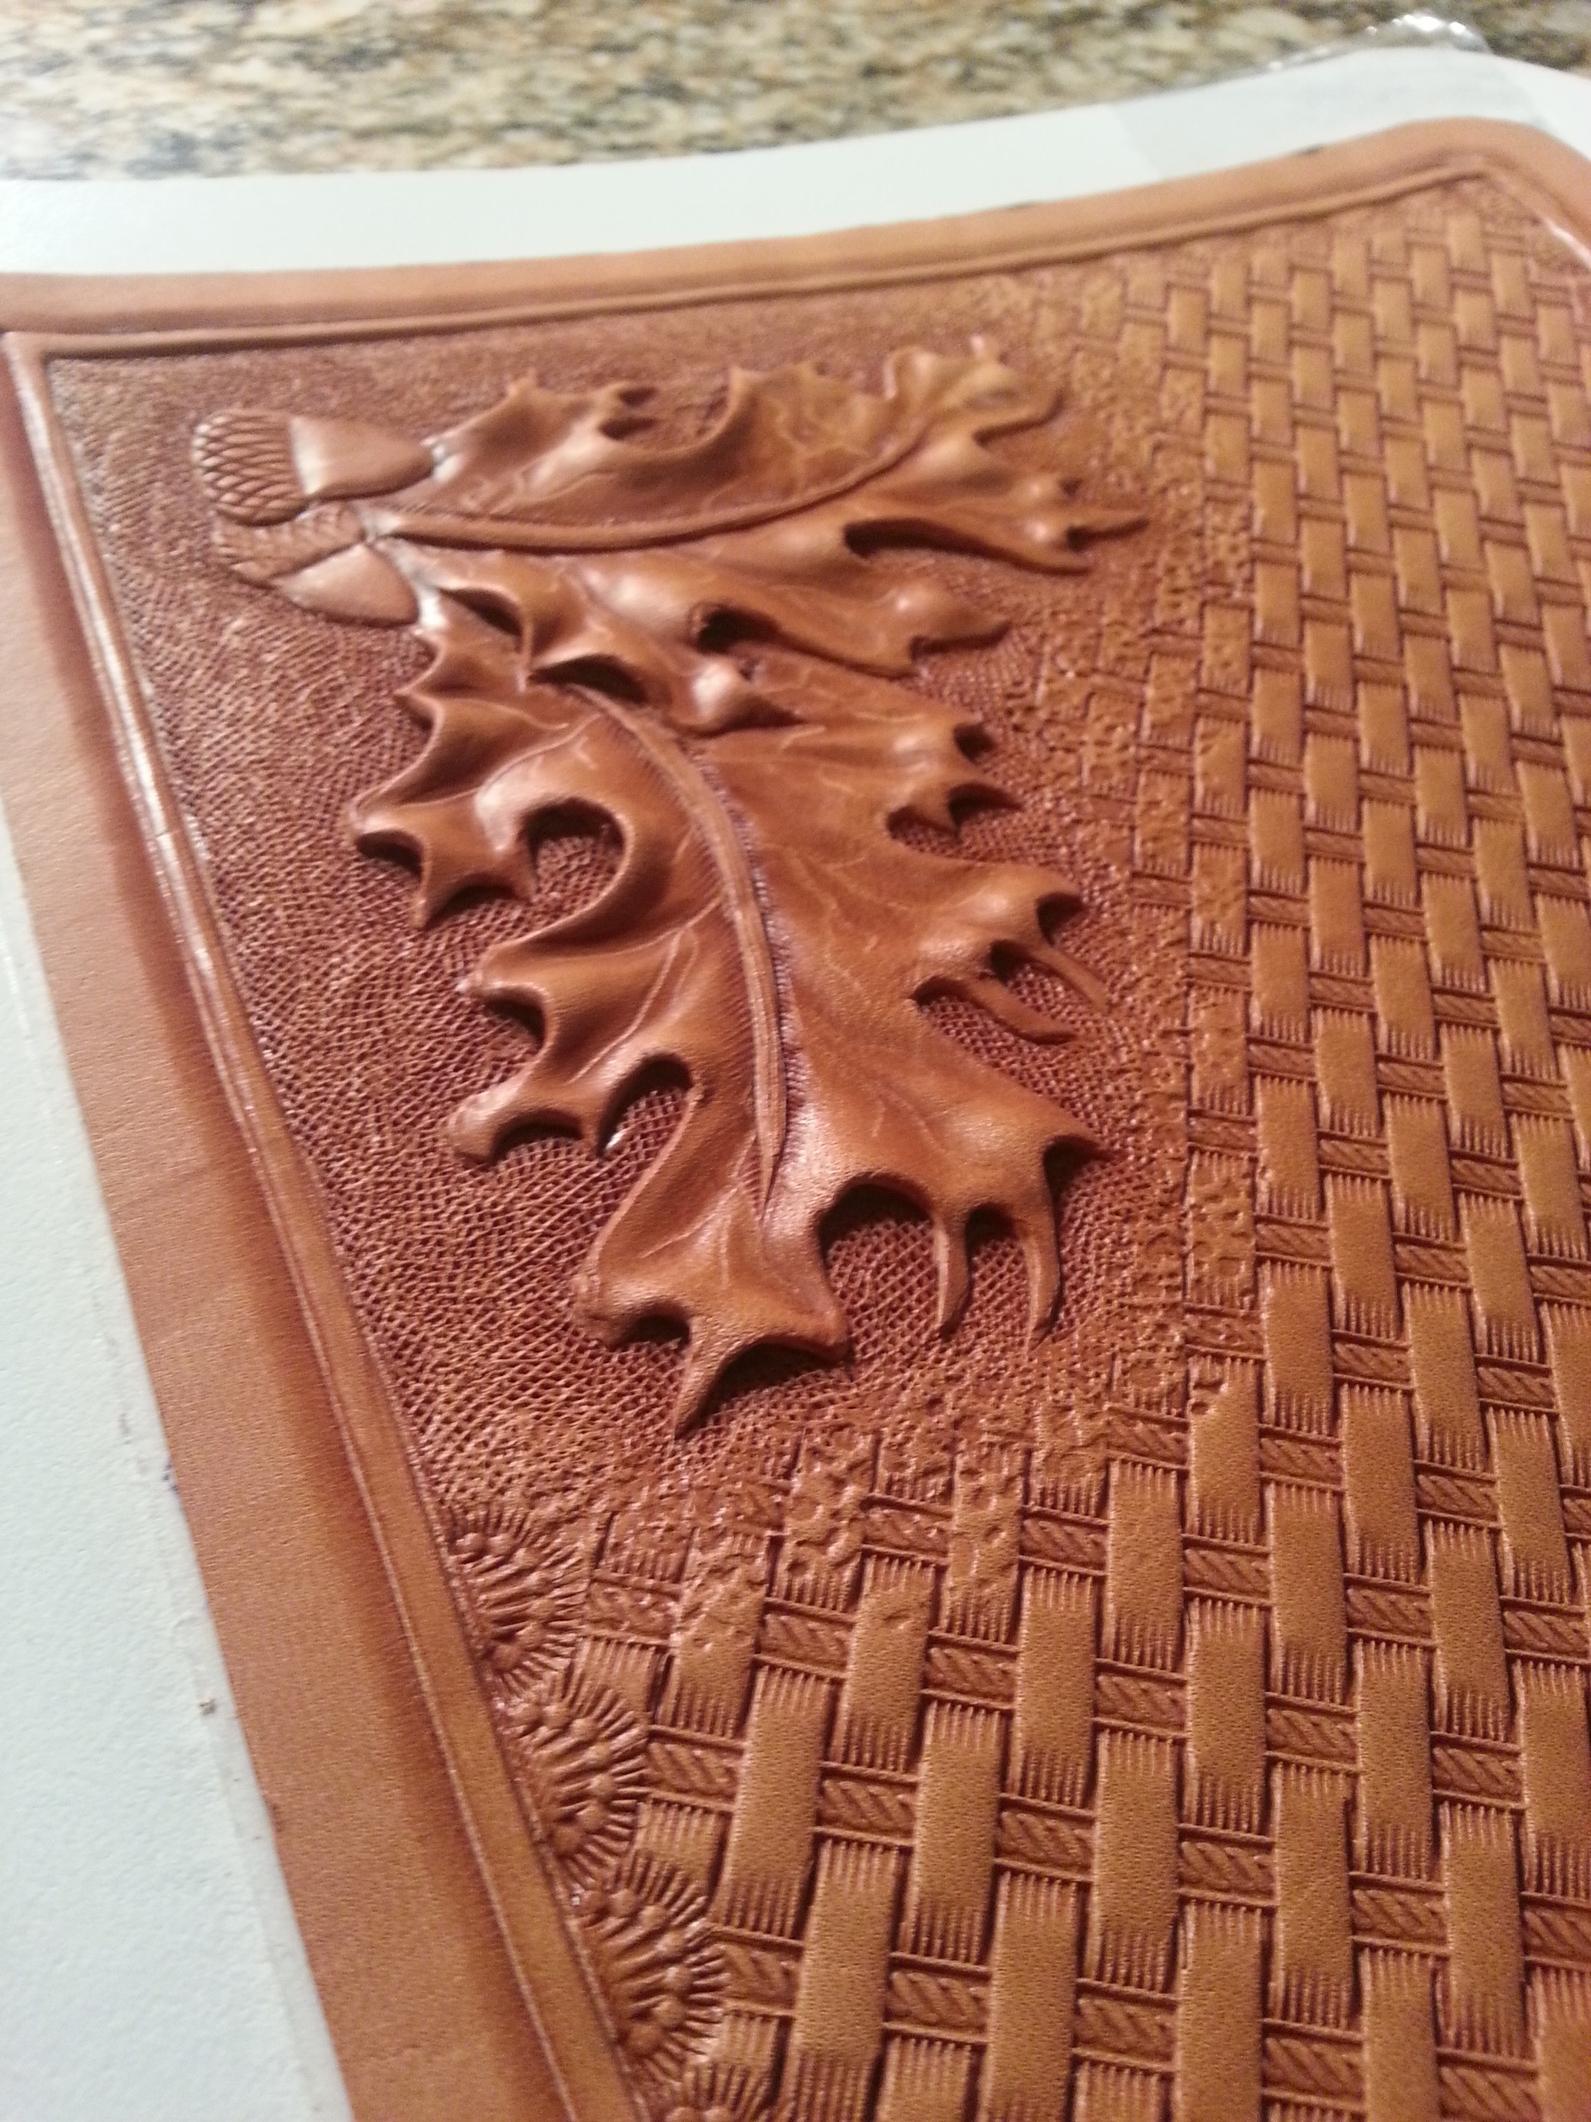 oak leaf leather carving pattern